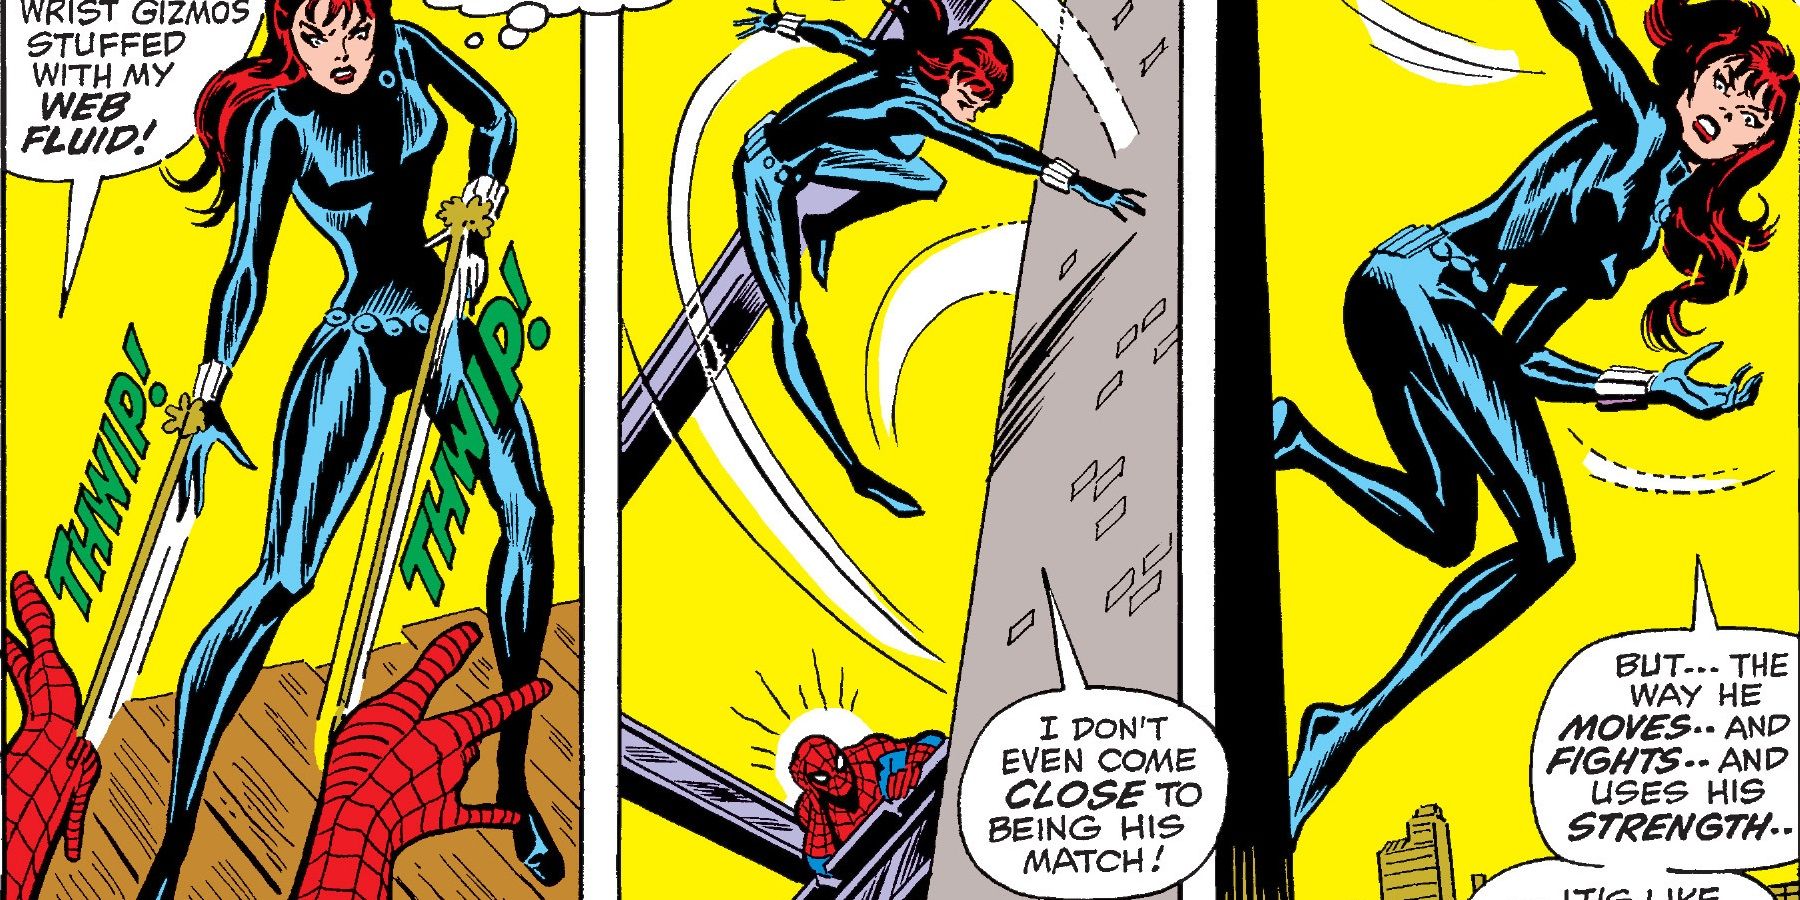 Black Widow runs from Spider-Man